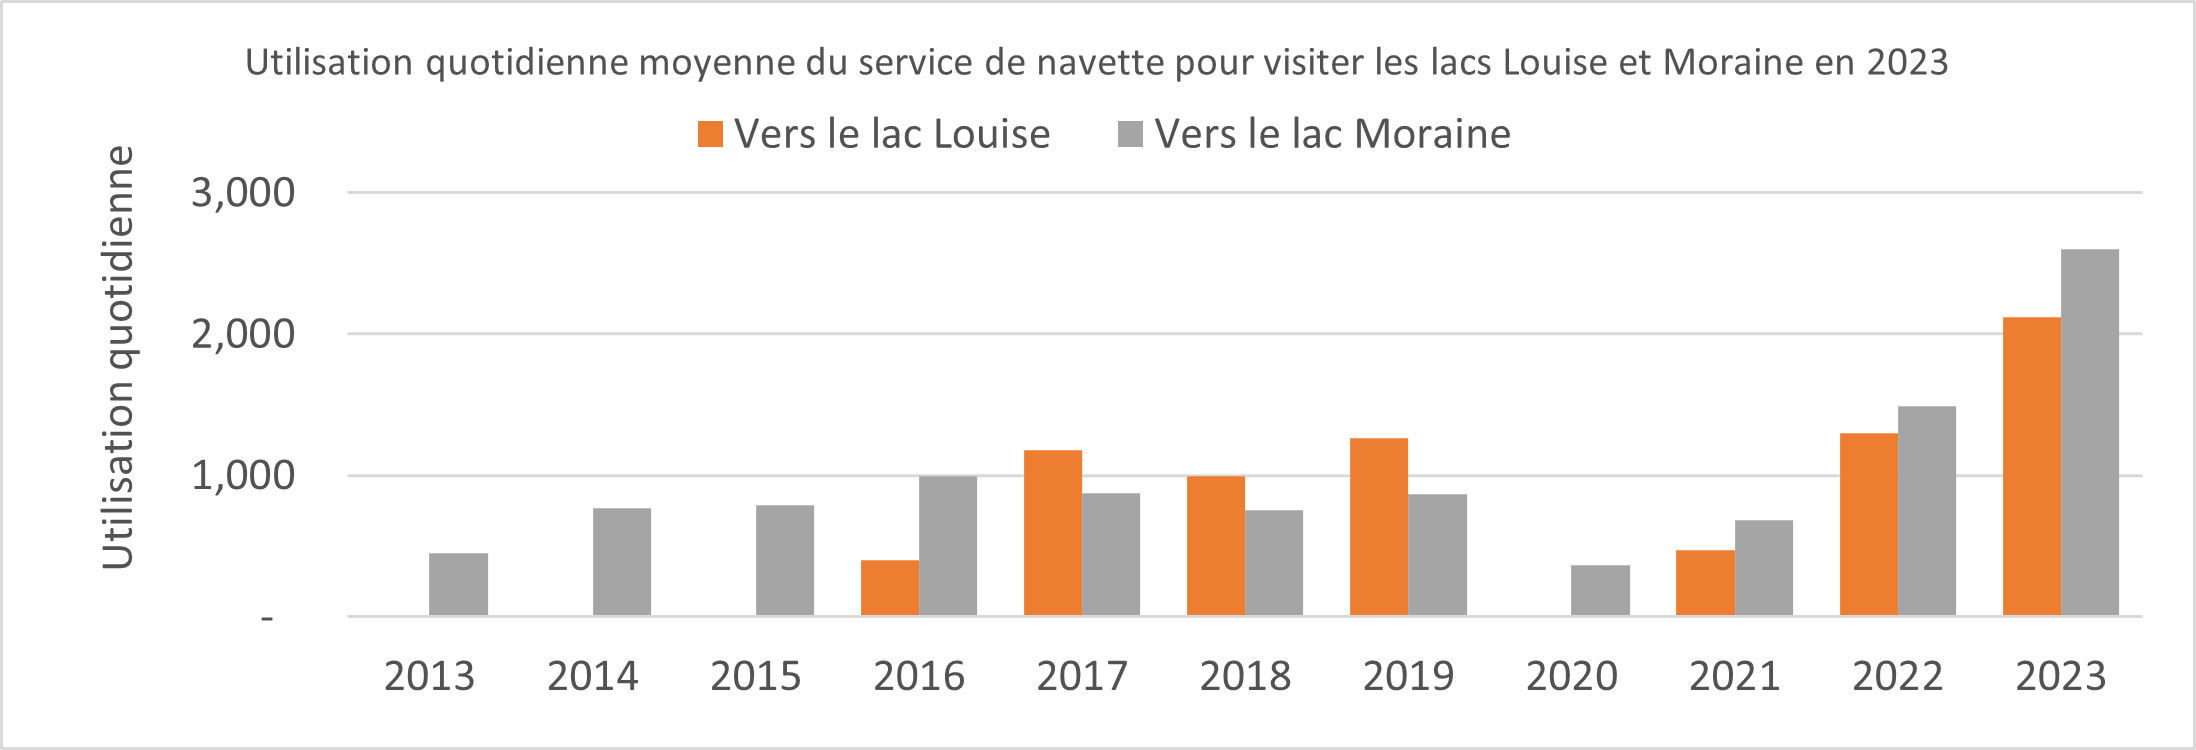 Graphique de l’utilisation quotidienne moyenne des navettes vers le lac Louise et le lac Moraine en 2023. Plus de détails dans la version texte ci-dessous.